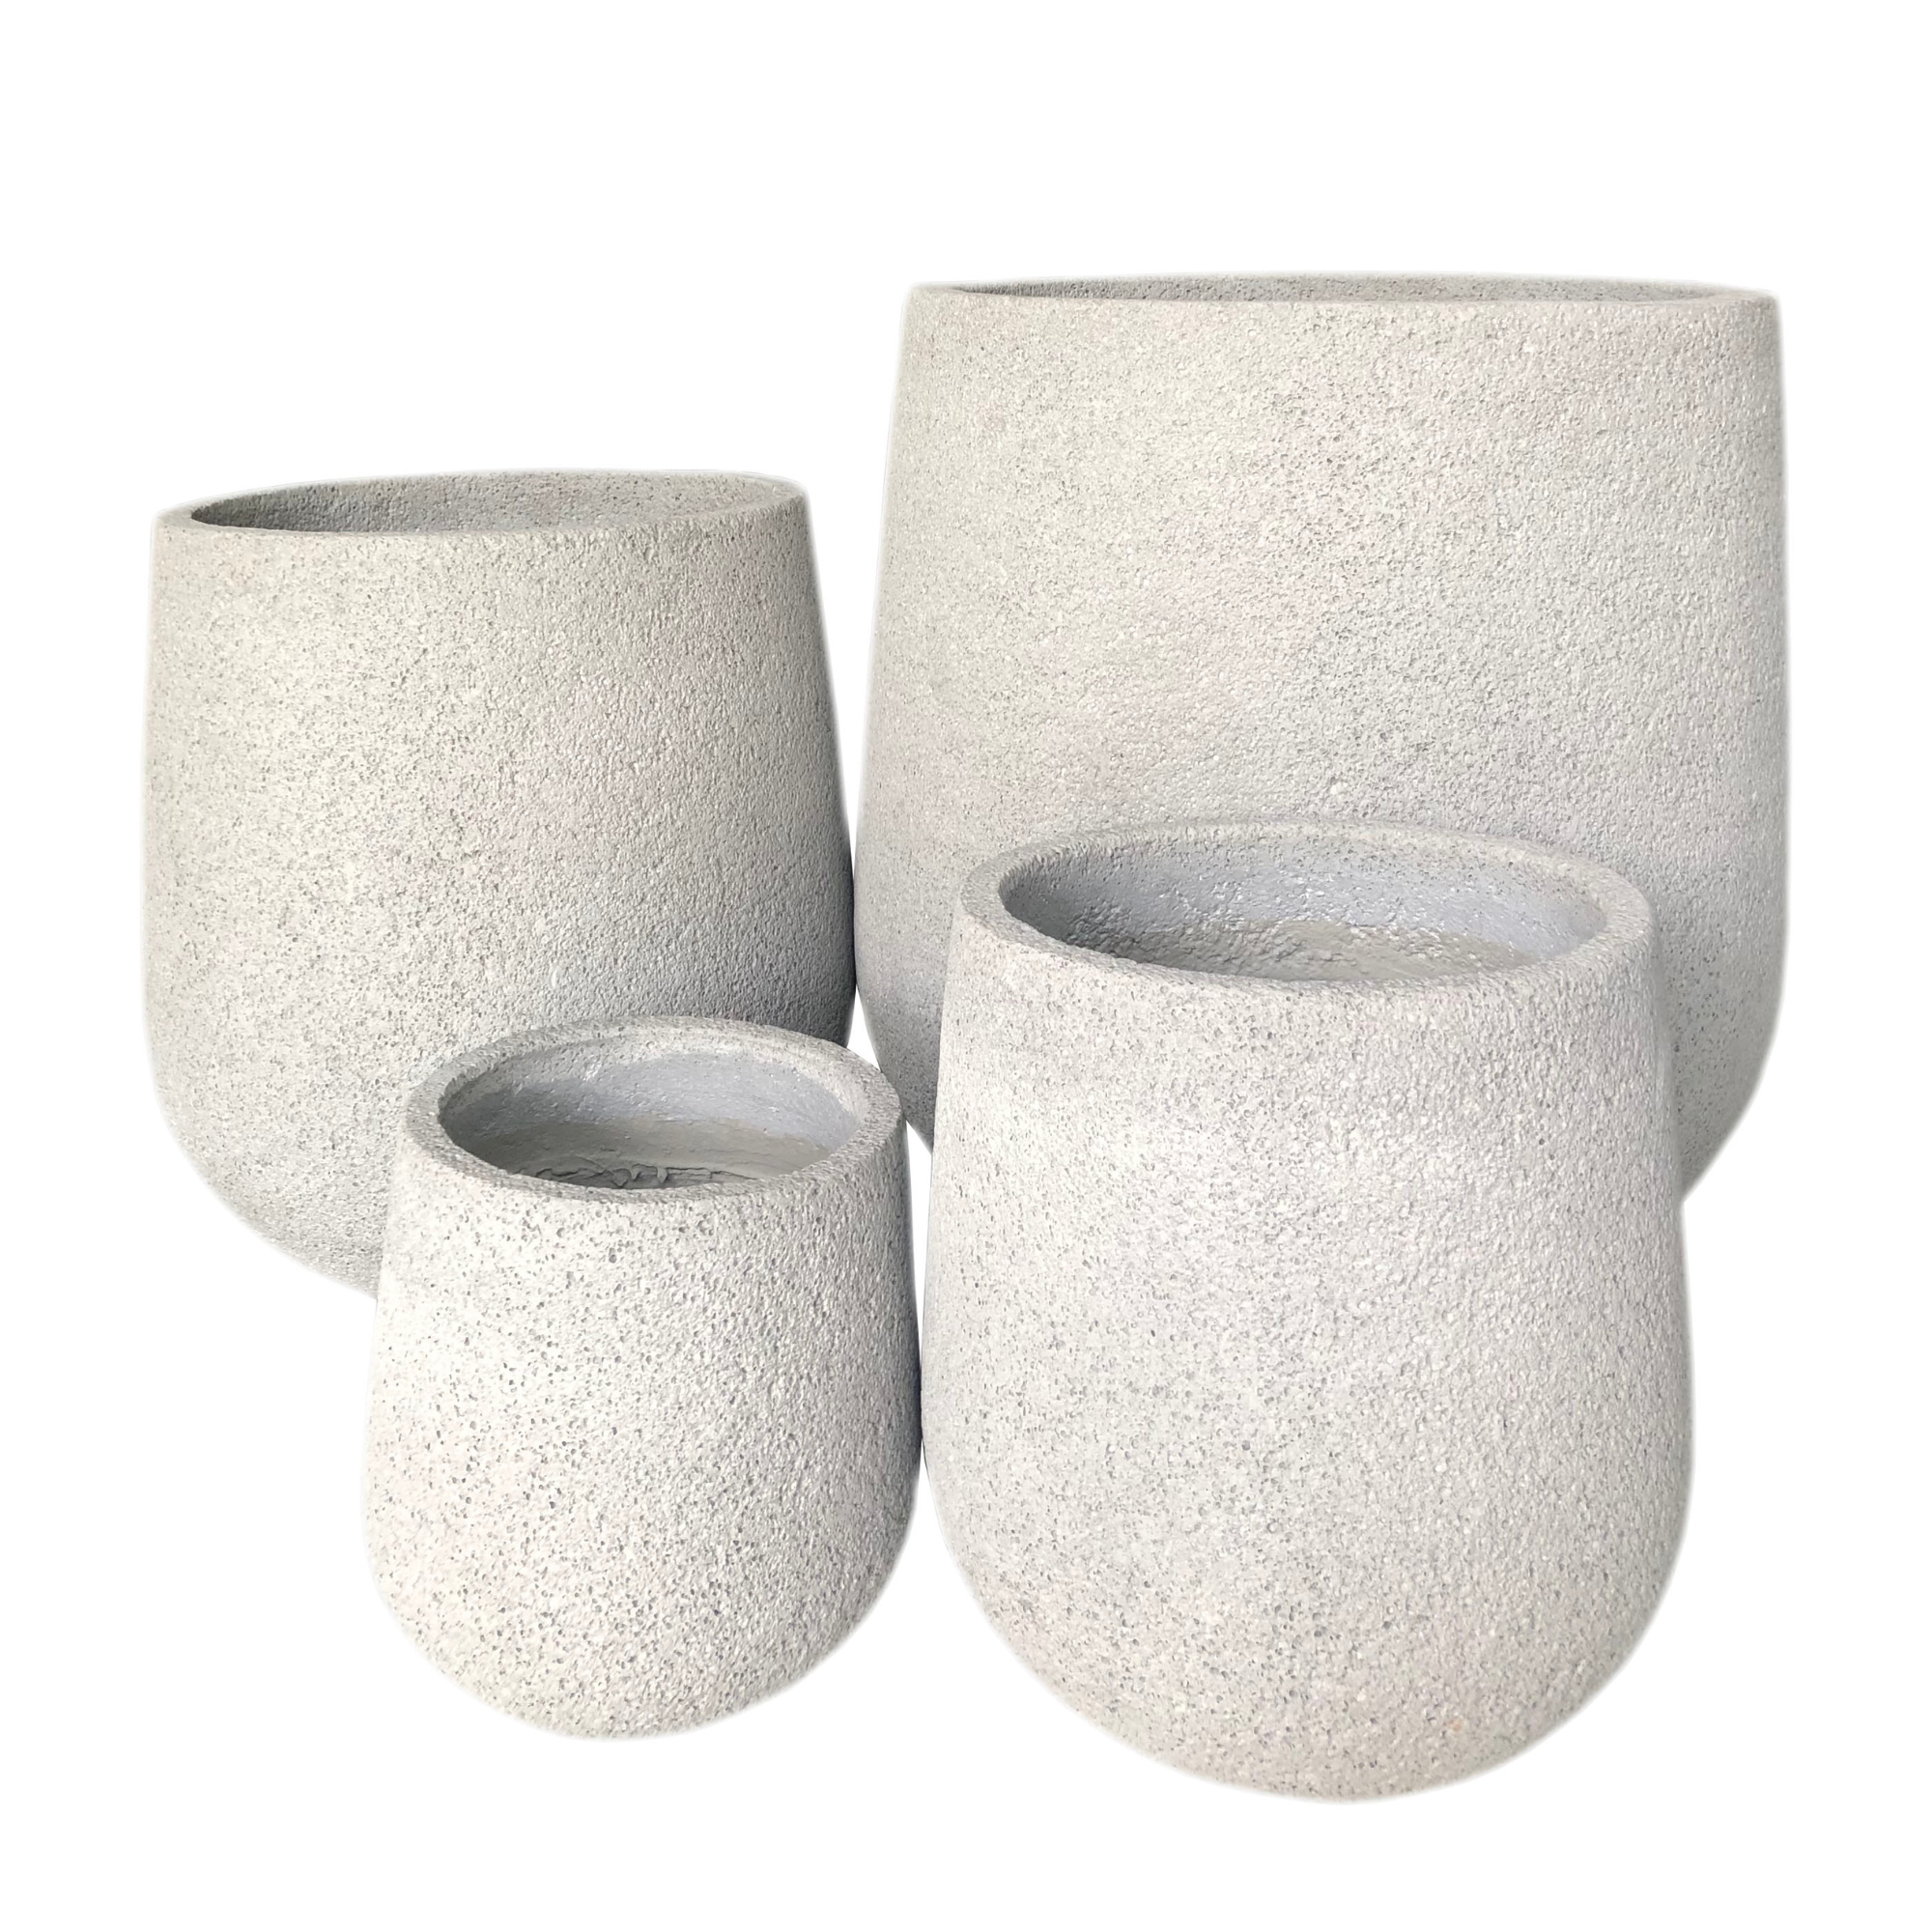 Grey Foam Indoor/Outdoor Plant Pot By Roots65W*65D*70H. (8785191076161)